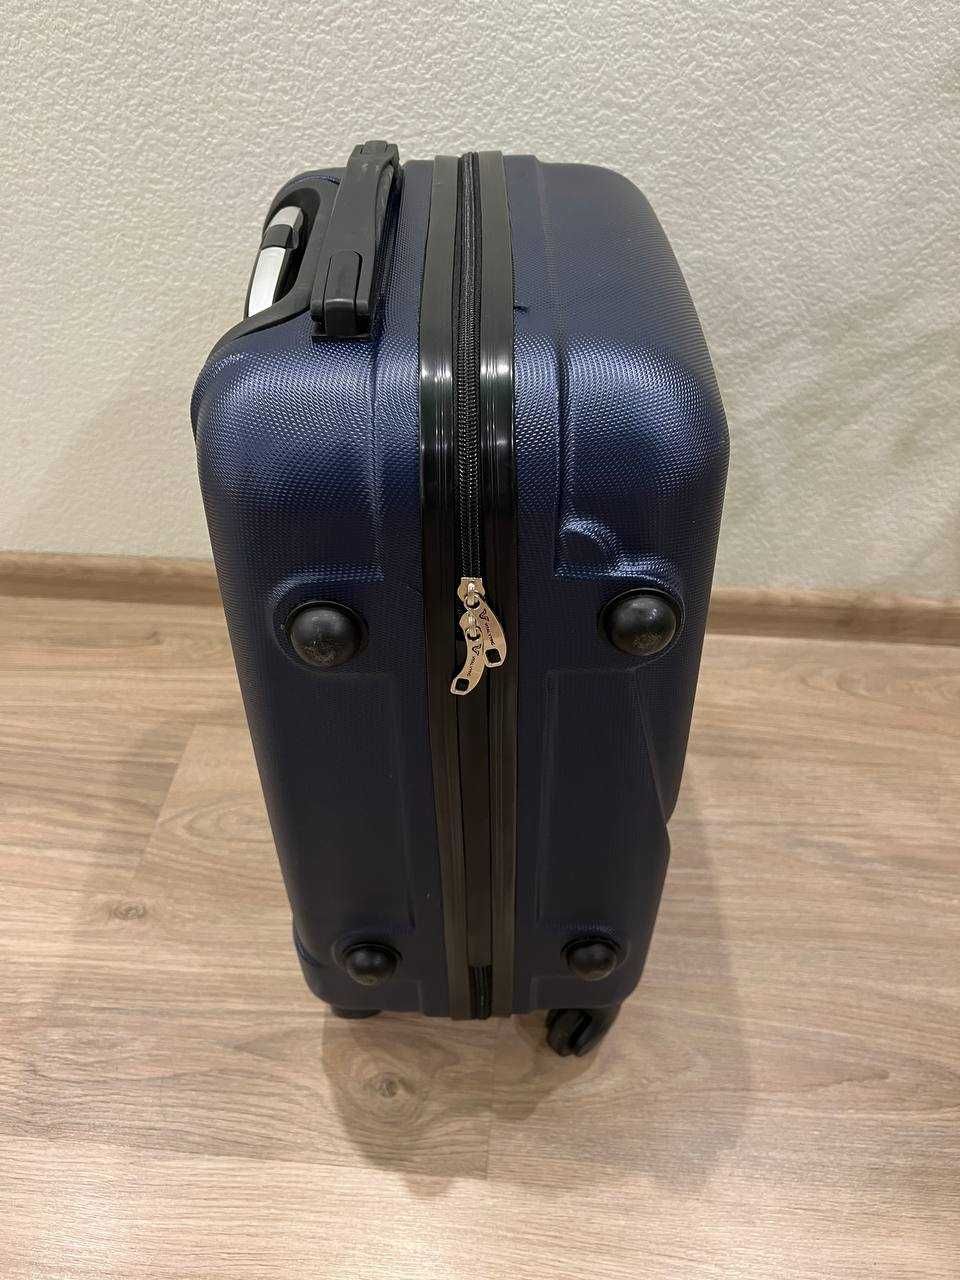 Продам чемодан новый